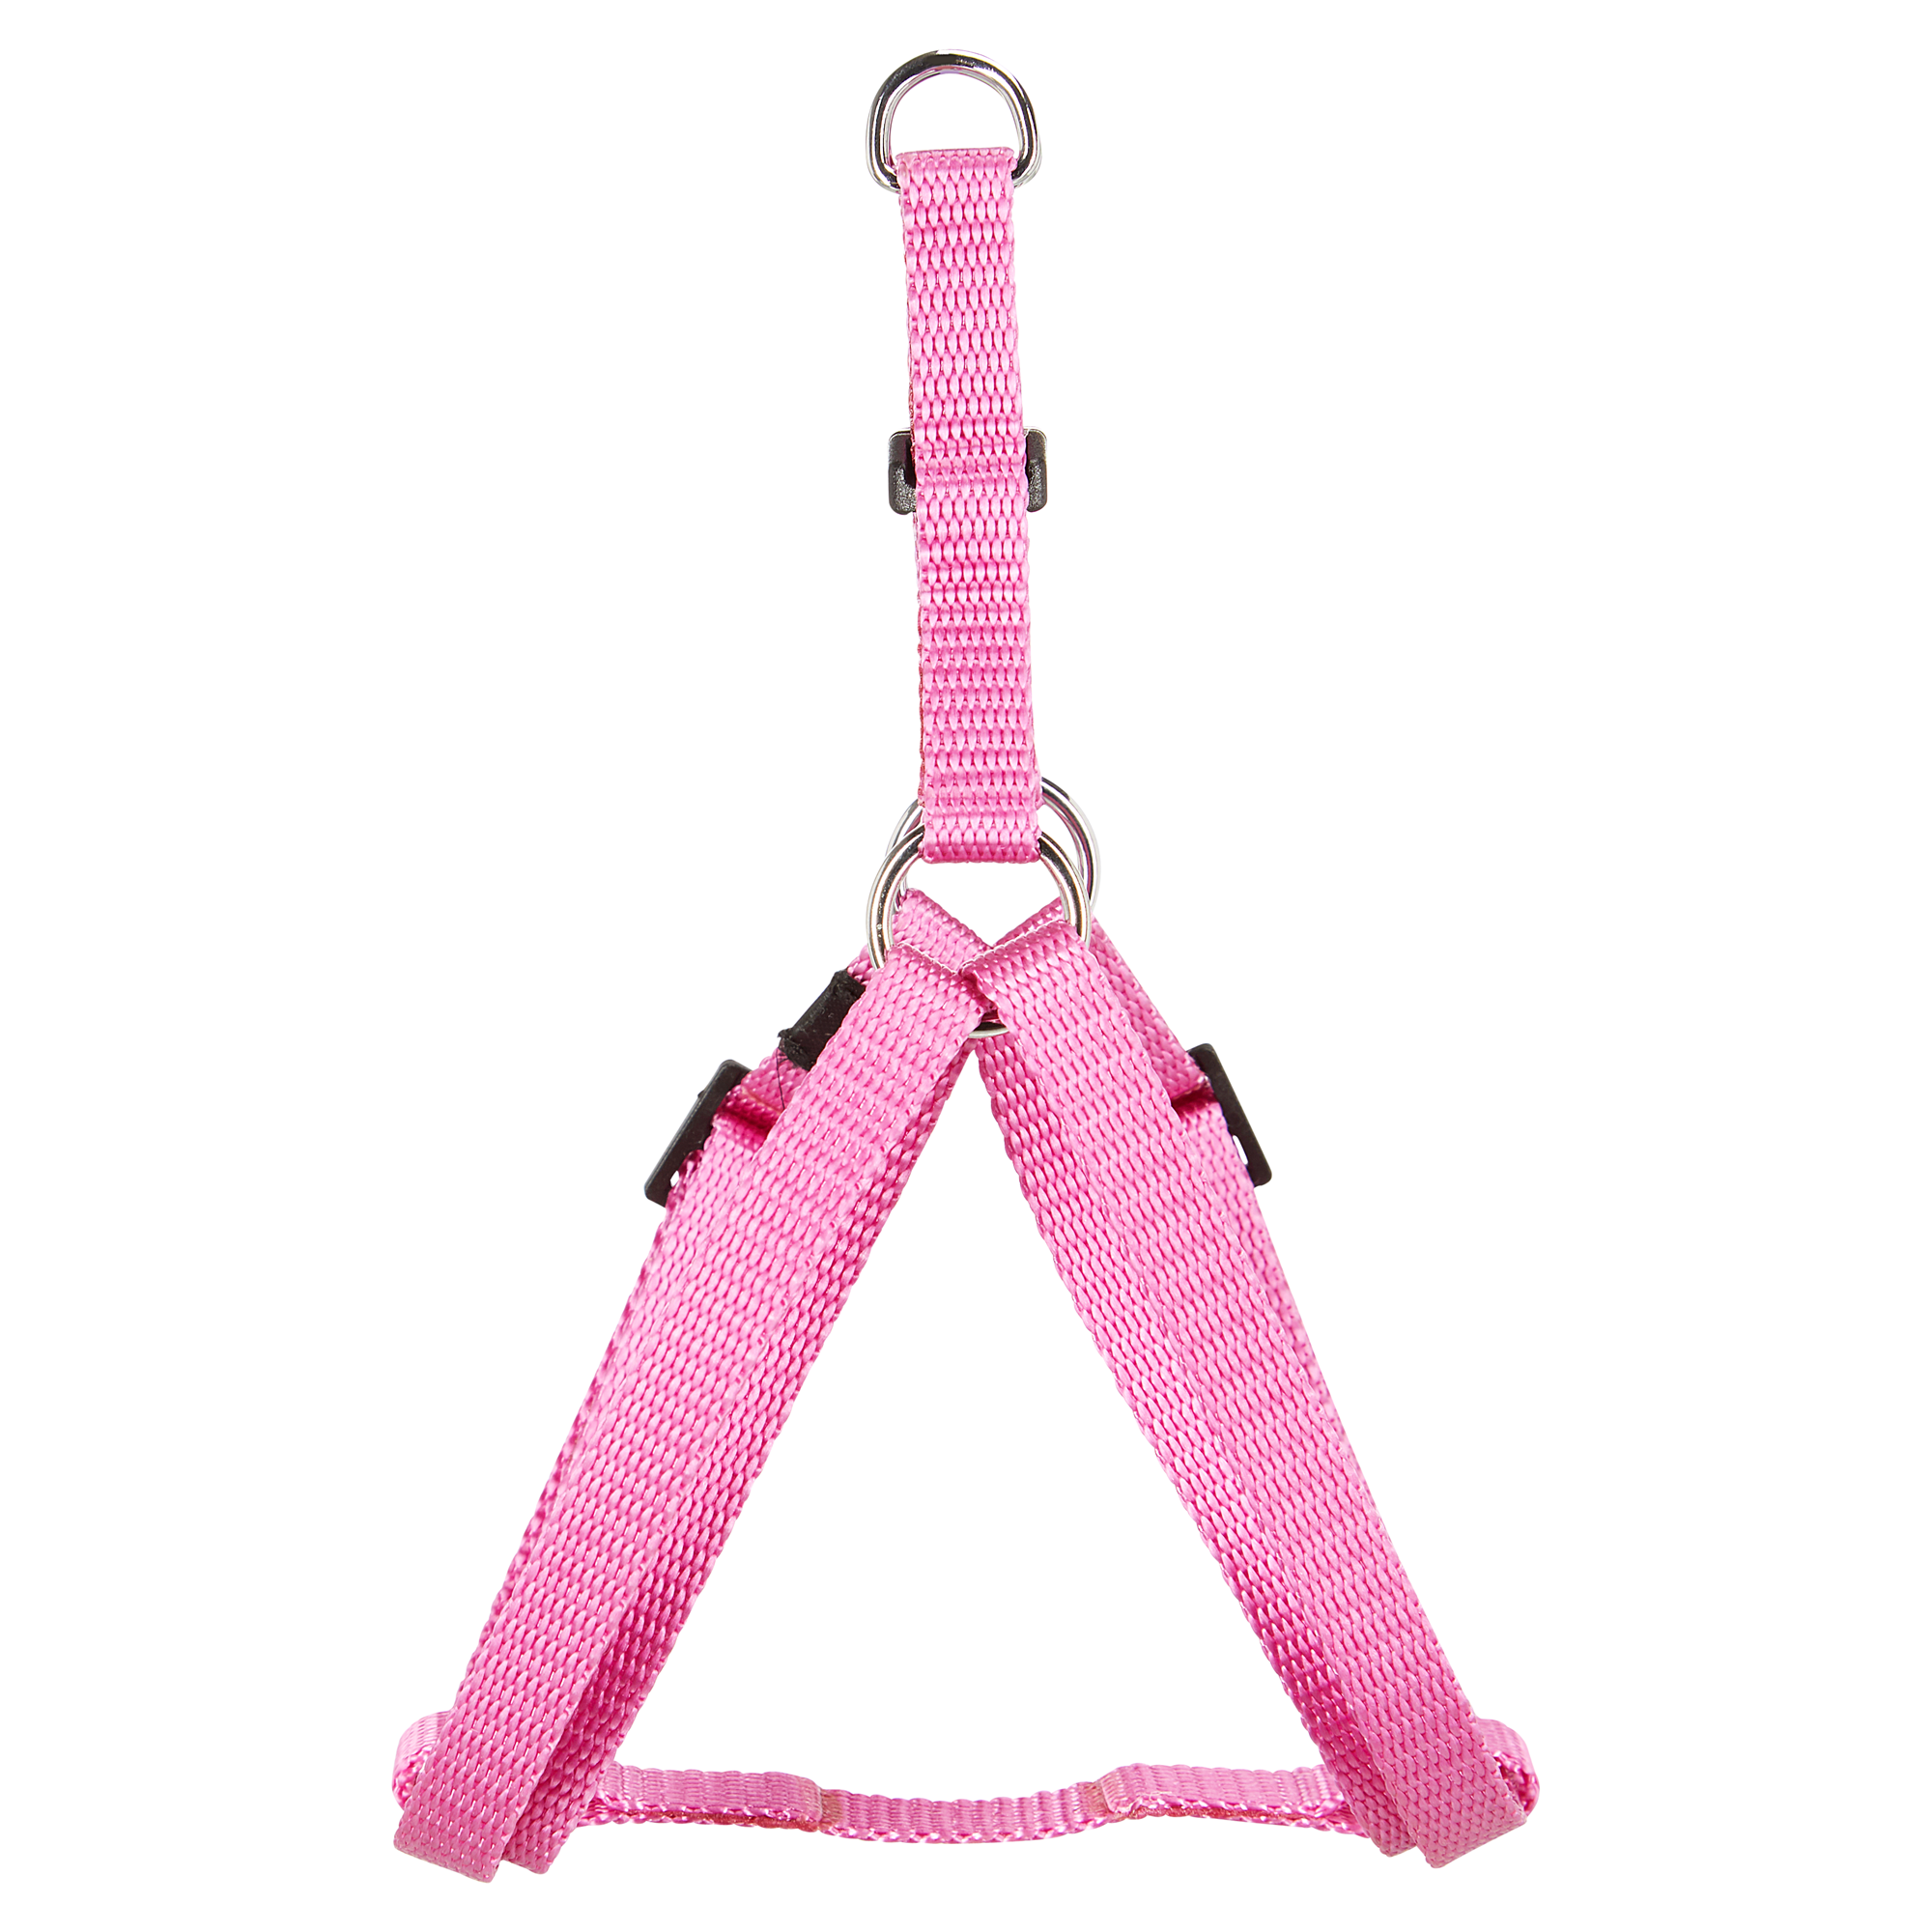 Hundegeschirr 'Art Sportiv Plus' pink Gr. S/M 35-60 cm + product picture